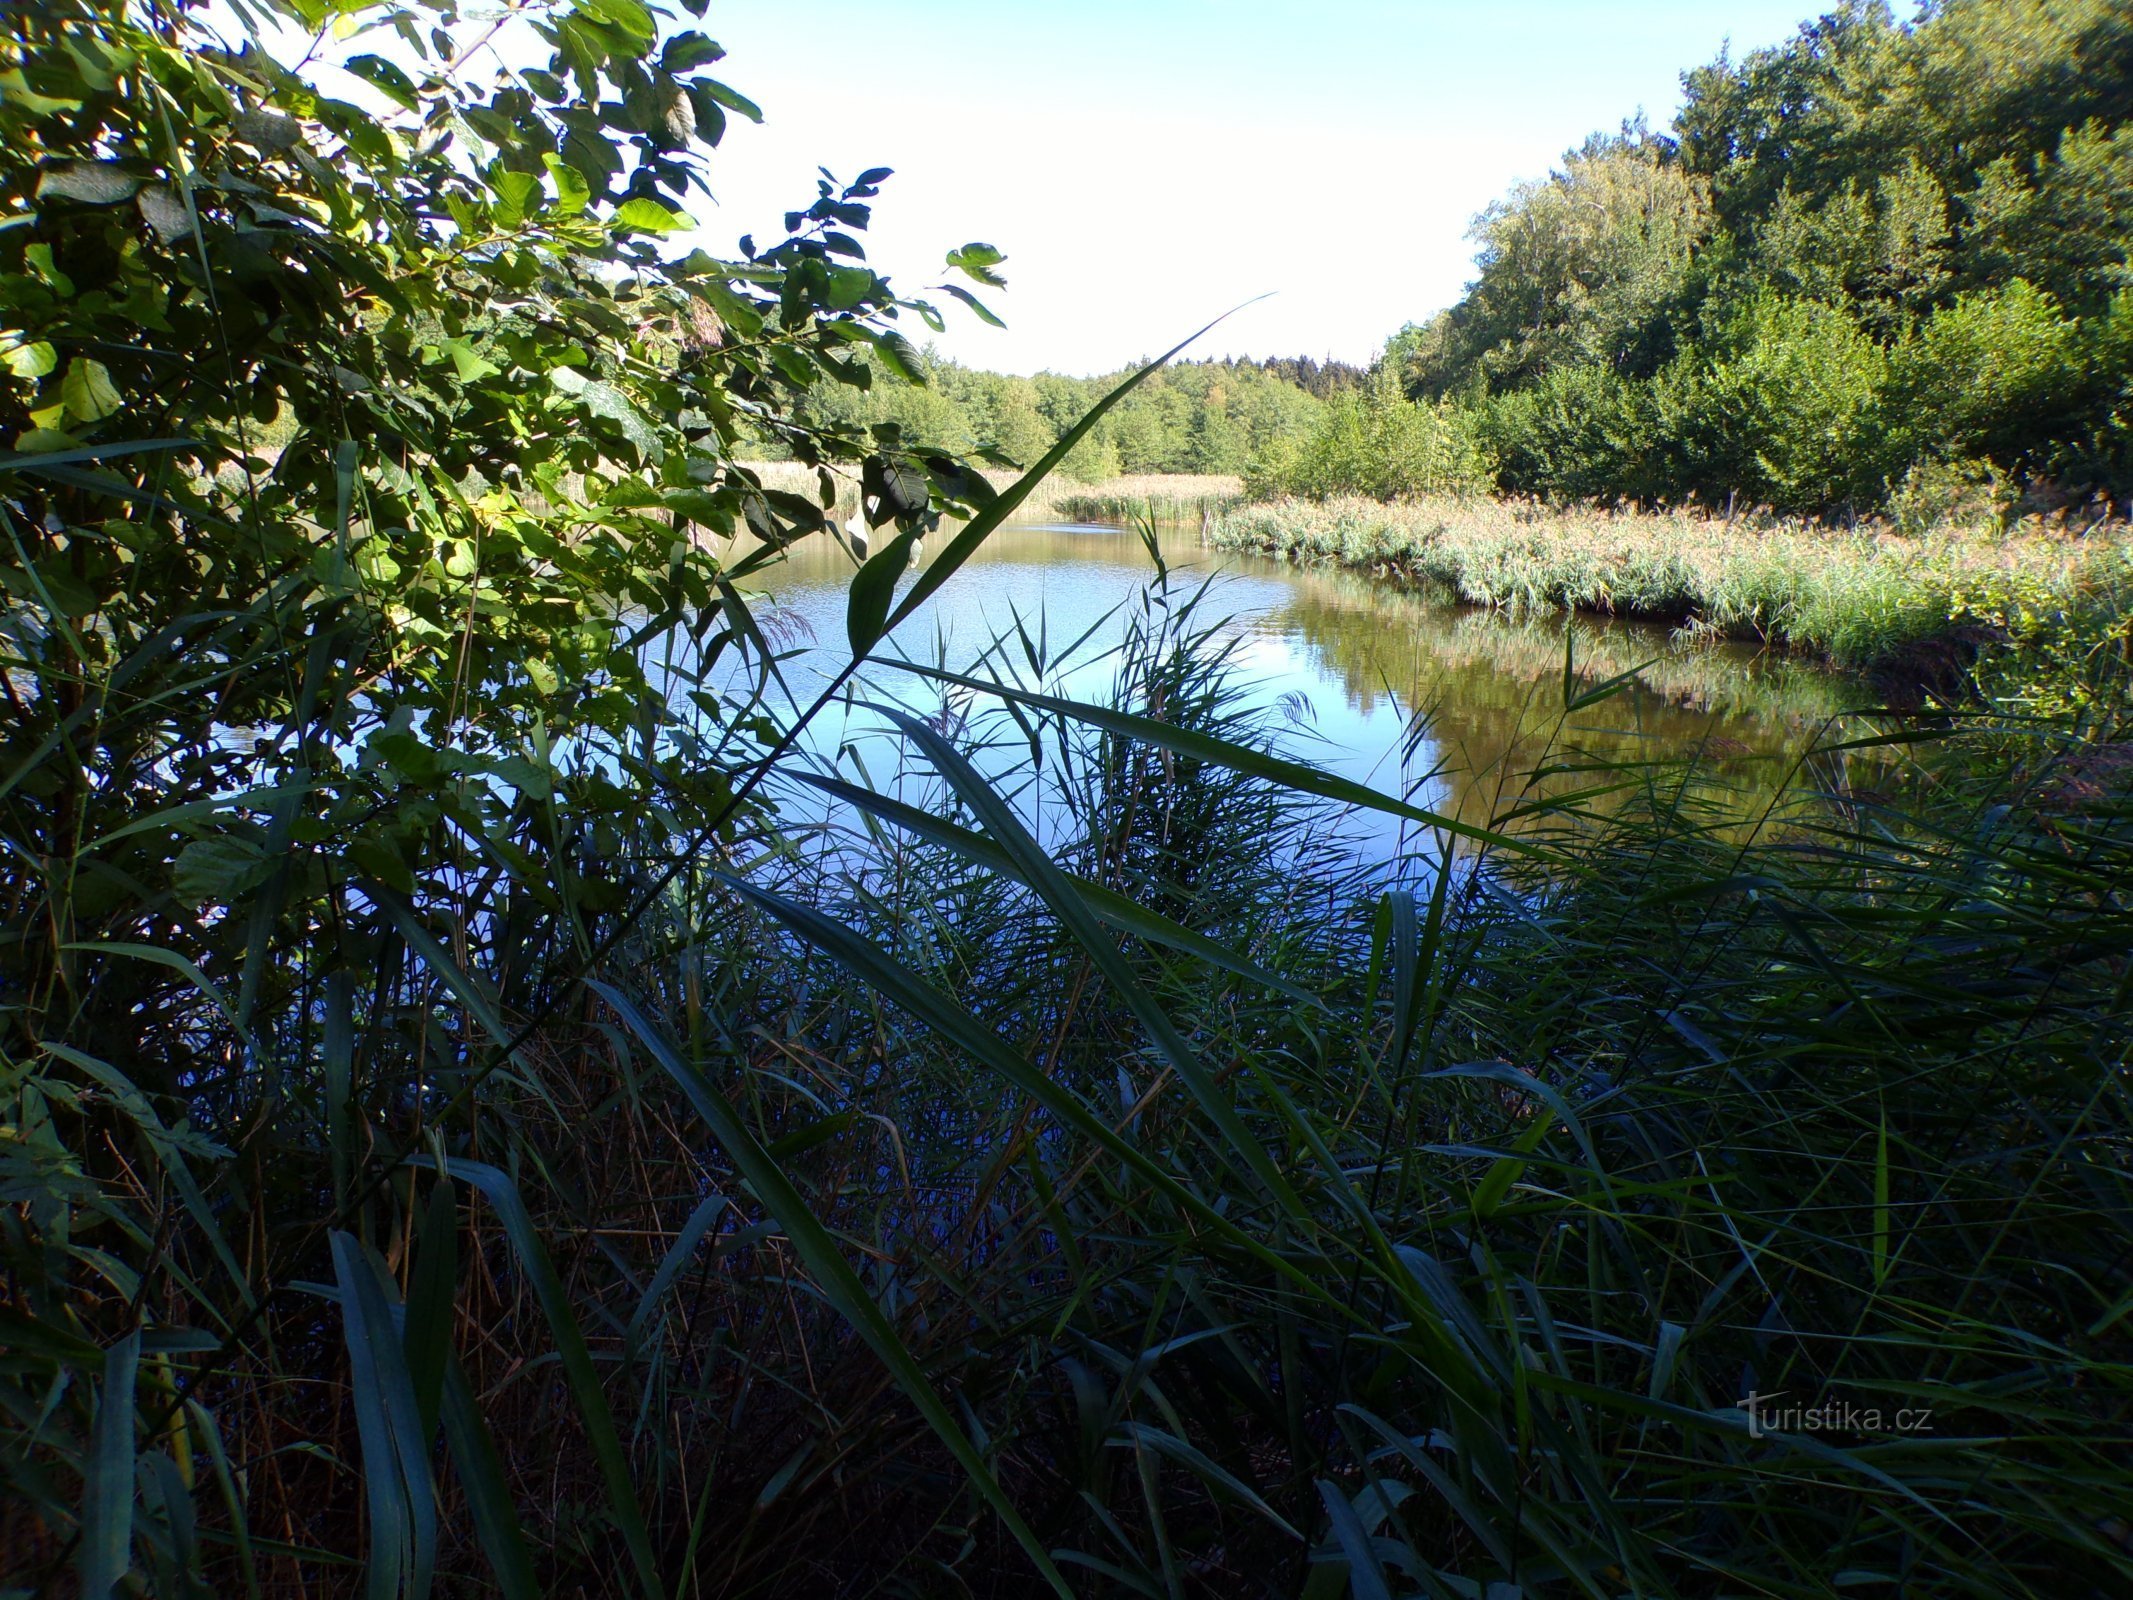 Hlinský rybník (Petrovice nad Orlicí、1.9.2022 年 XNUMX 月 XNUMX 日)